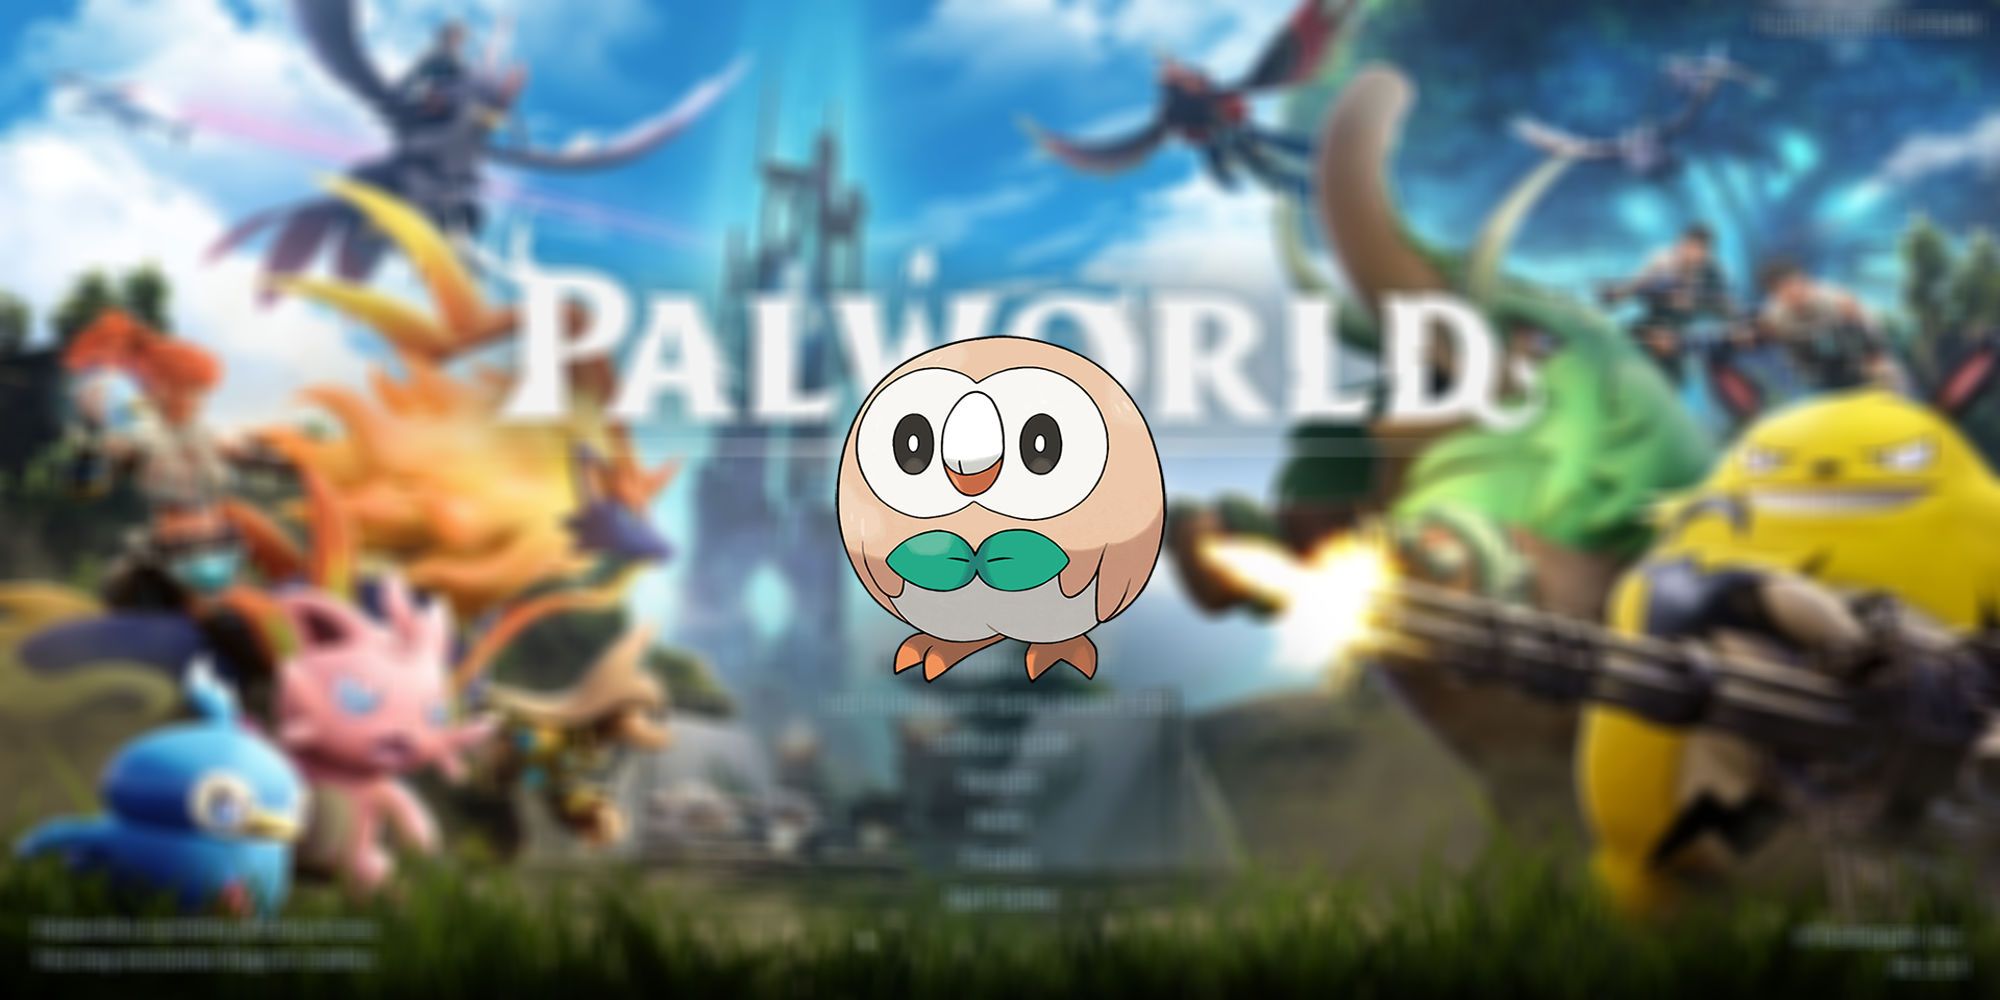 Роулет из Pokemon, потенциально подходящий для Palworld